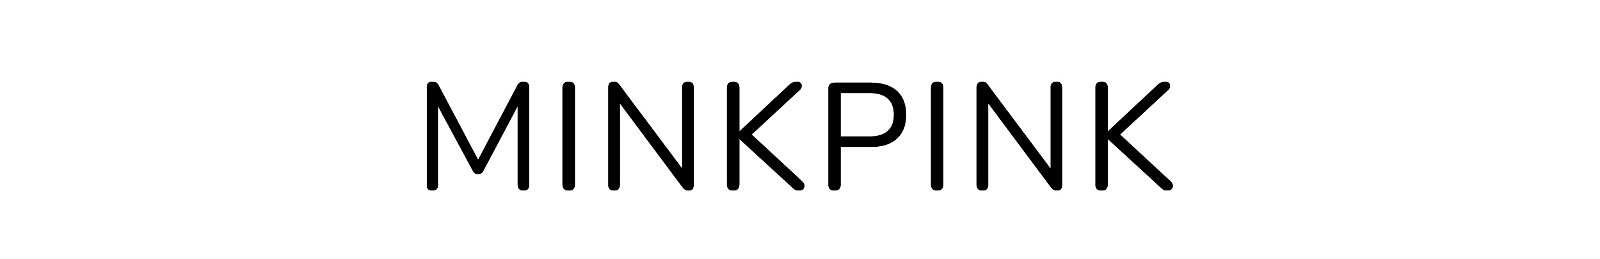 MINKPINK Homepage